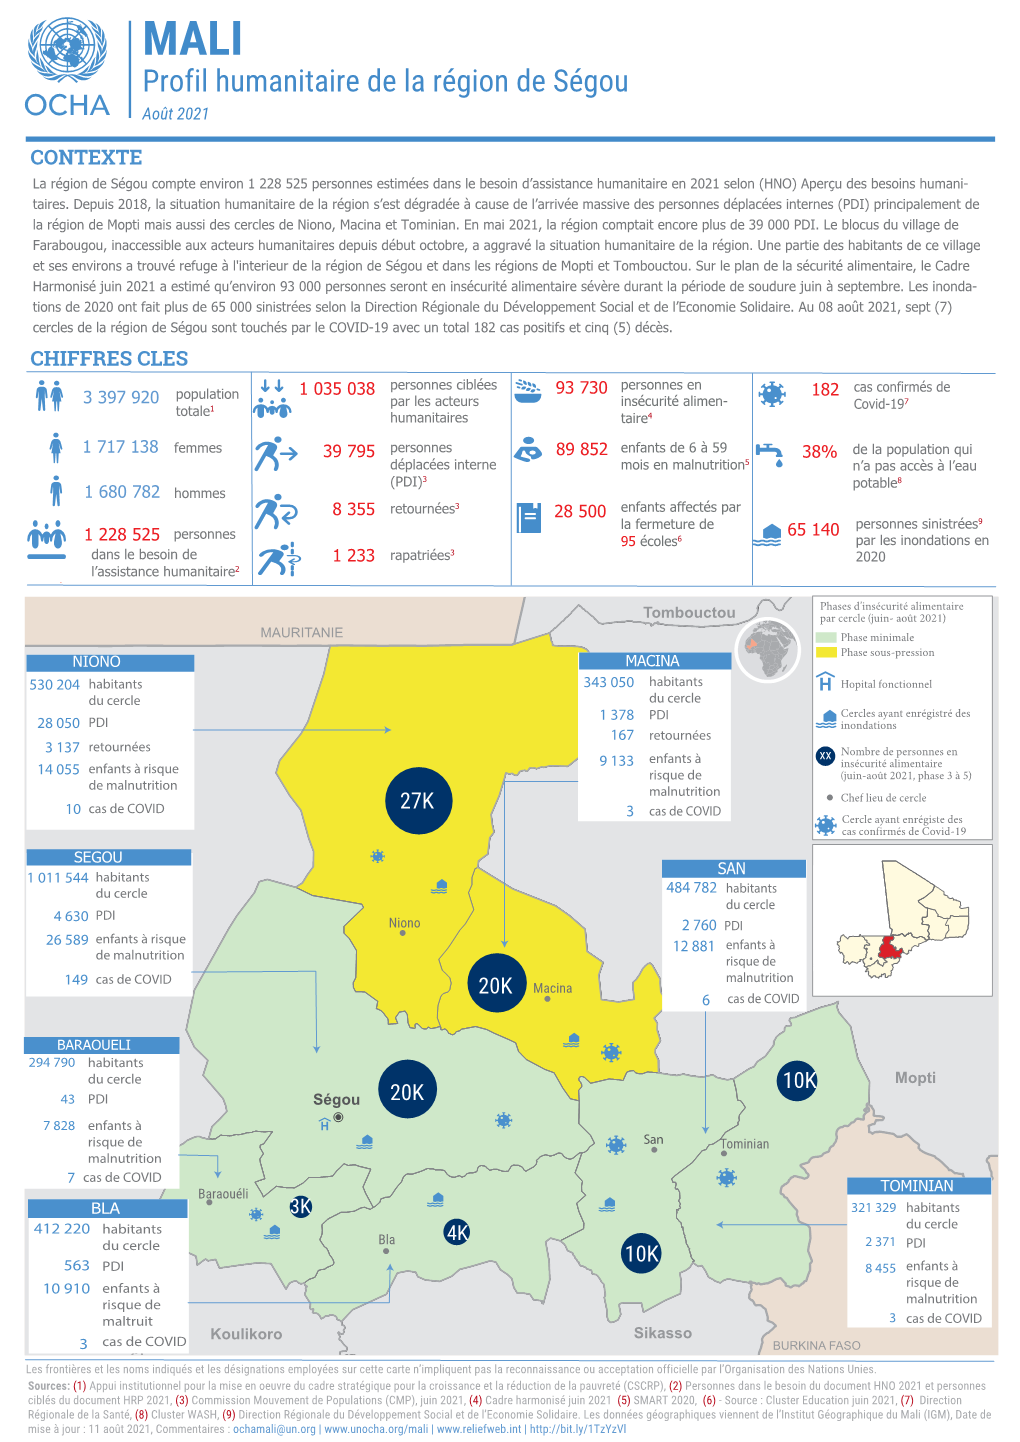 Mali : Profil Humanitaire De La Région De Ségou